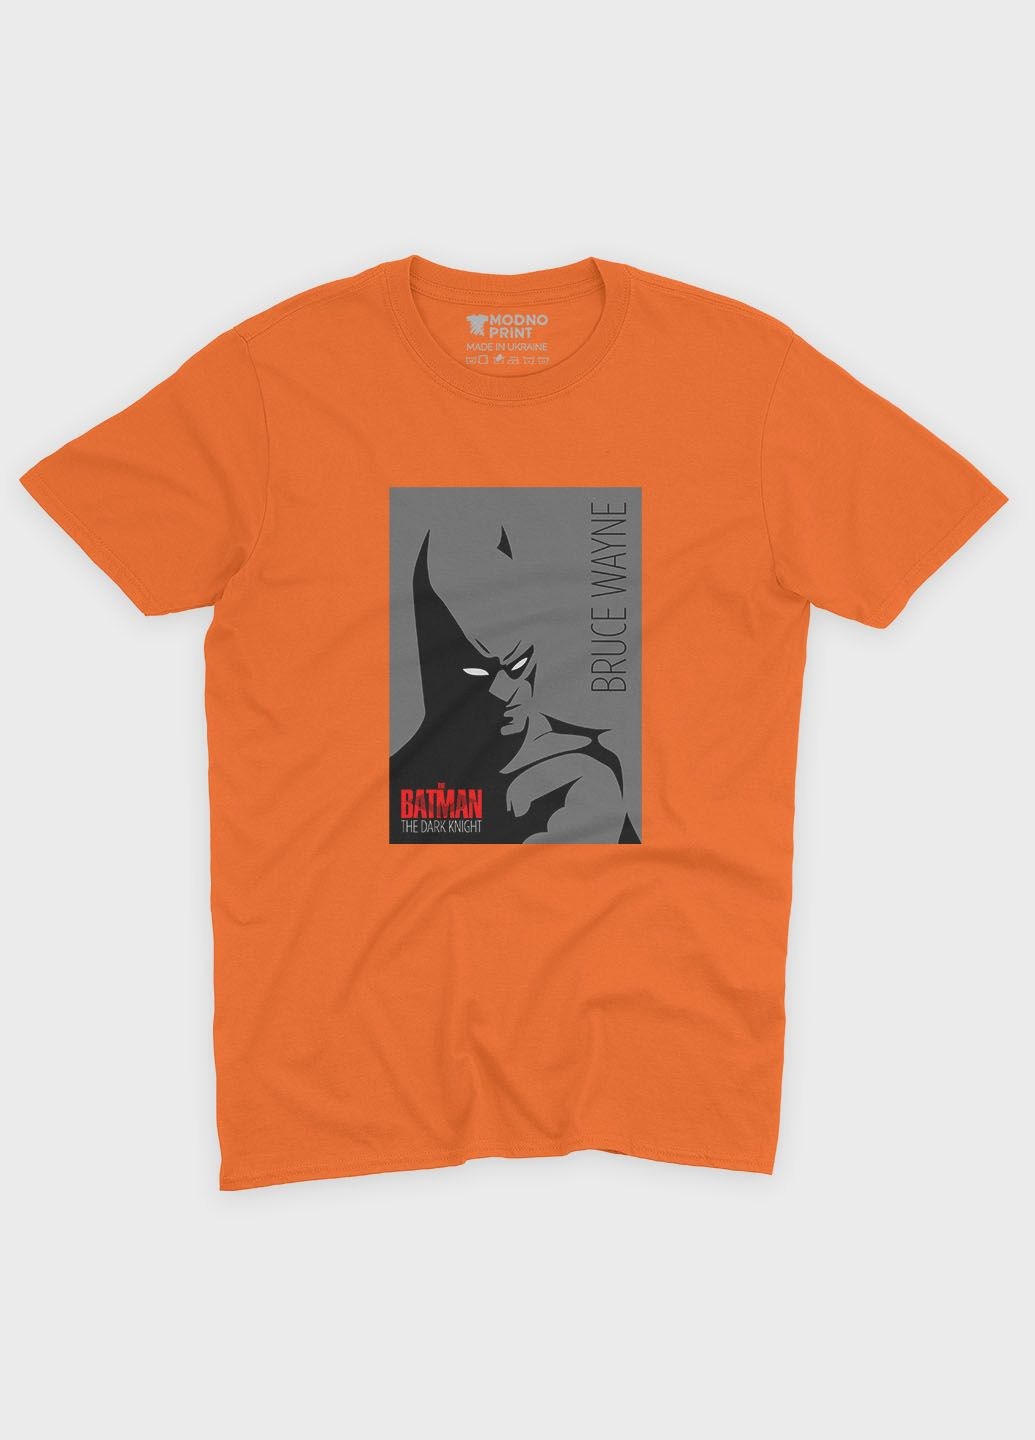 Оранжевая демисезонная футболка для мальчика с принтом супергероя - бэтмен (ts001-1-ora-006-003-031-b) Modno